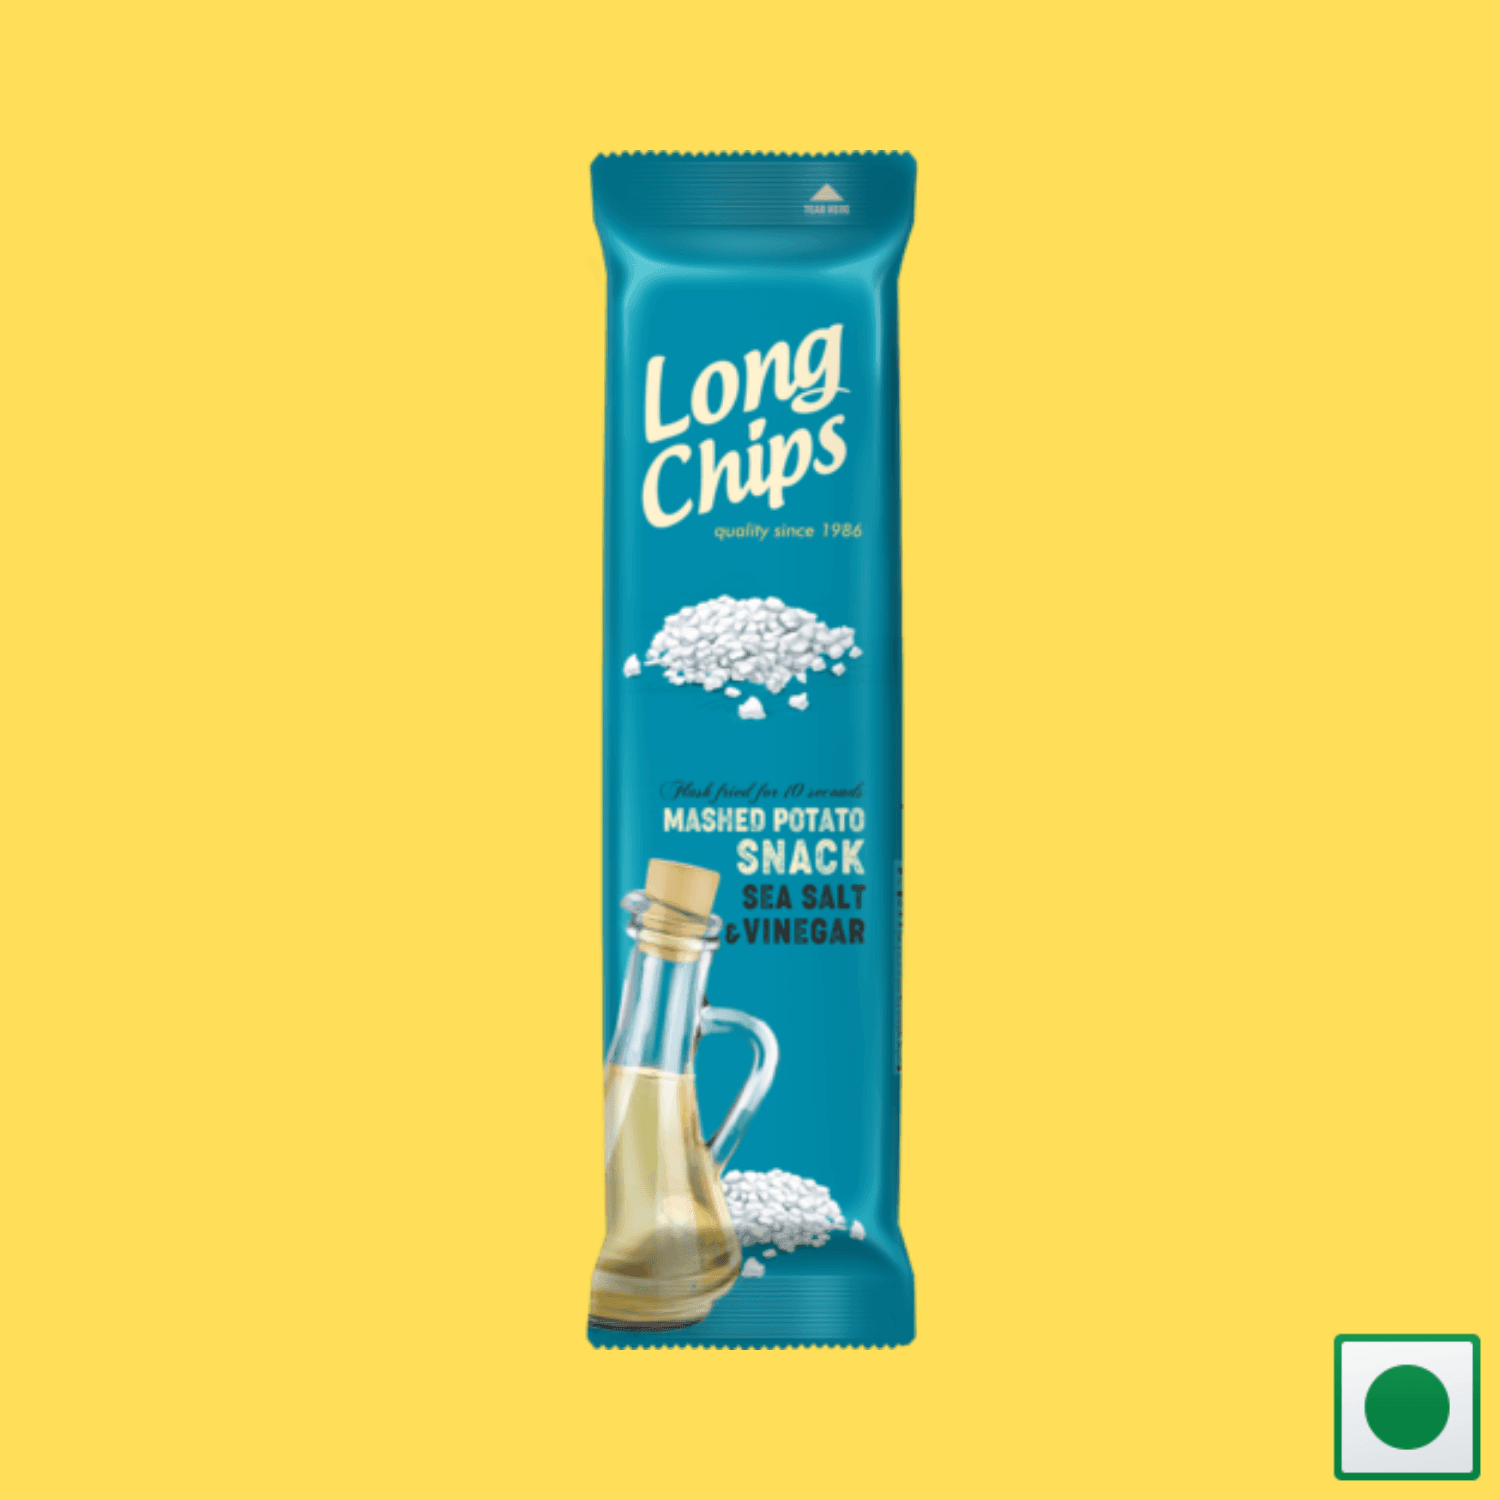 Long Chips Mashed Potato Snack Sea Salt & Vinegar Flavoured, 75g (Imported) - Super 7 Mart